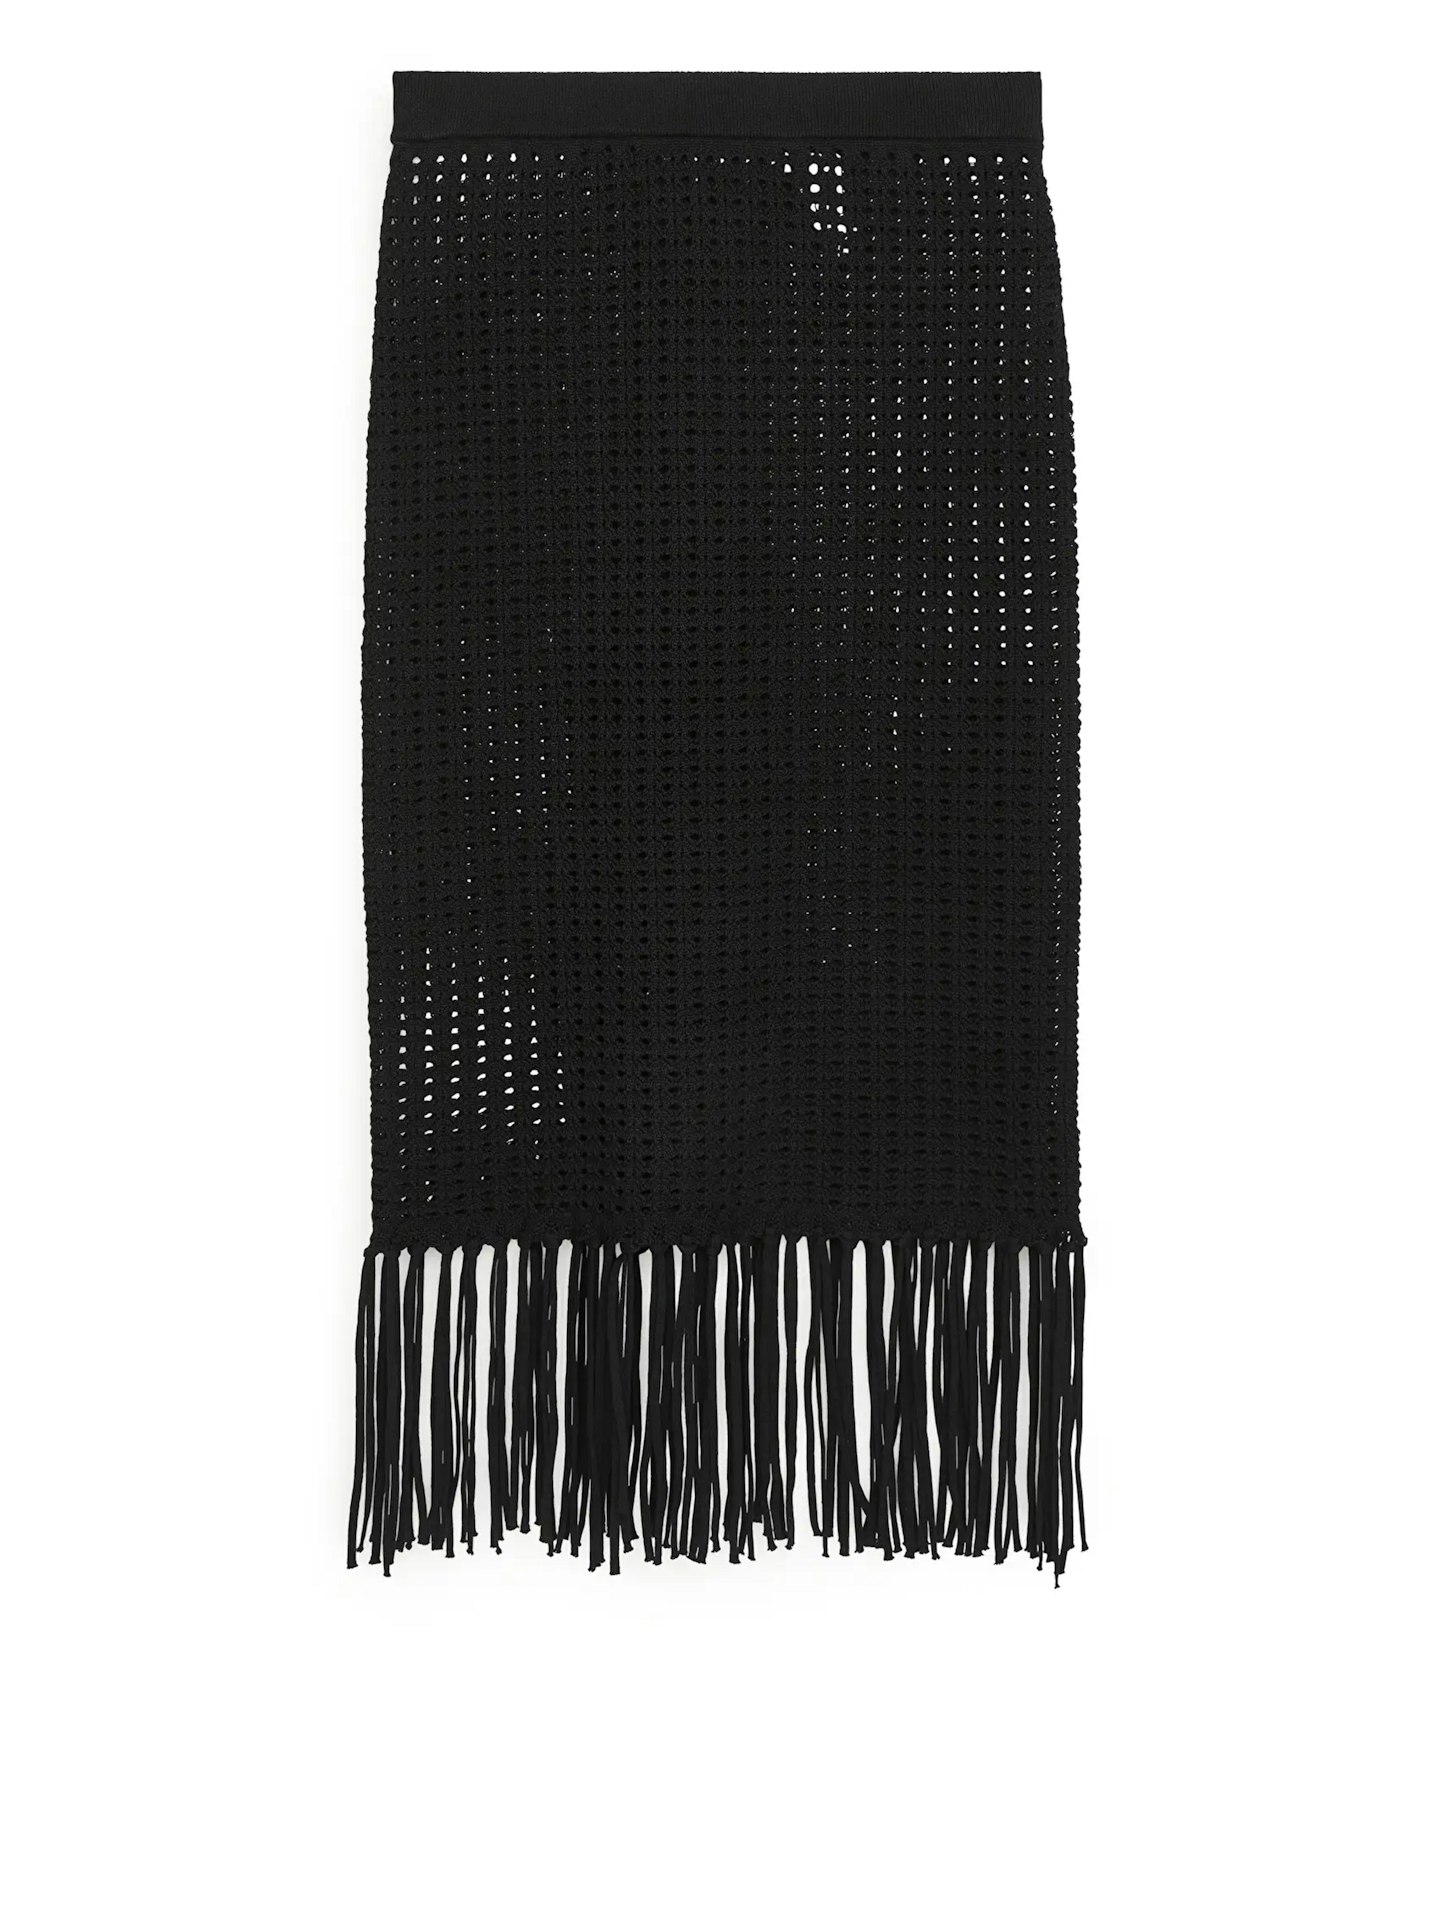 Arket, Cotton Crochet Skirt, £69